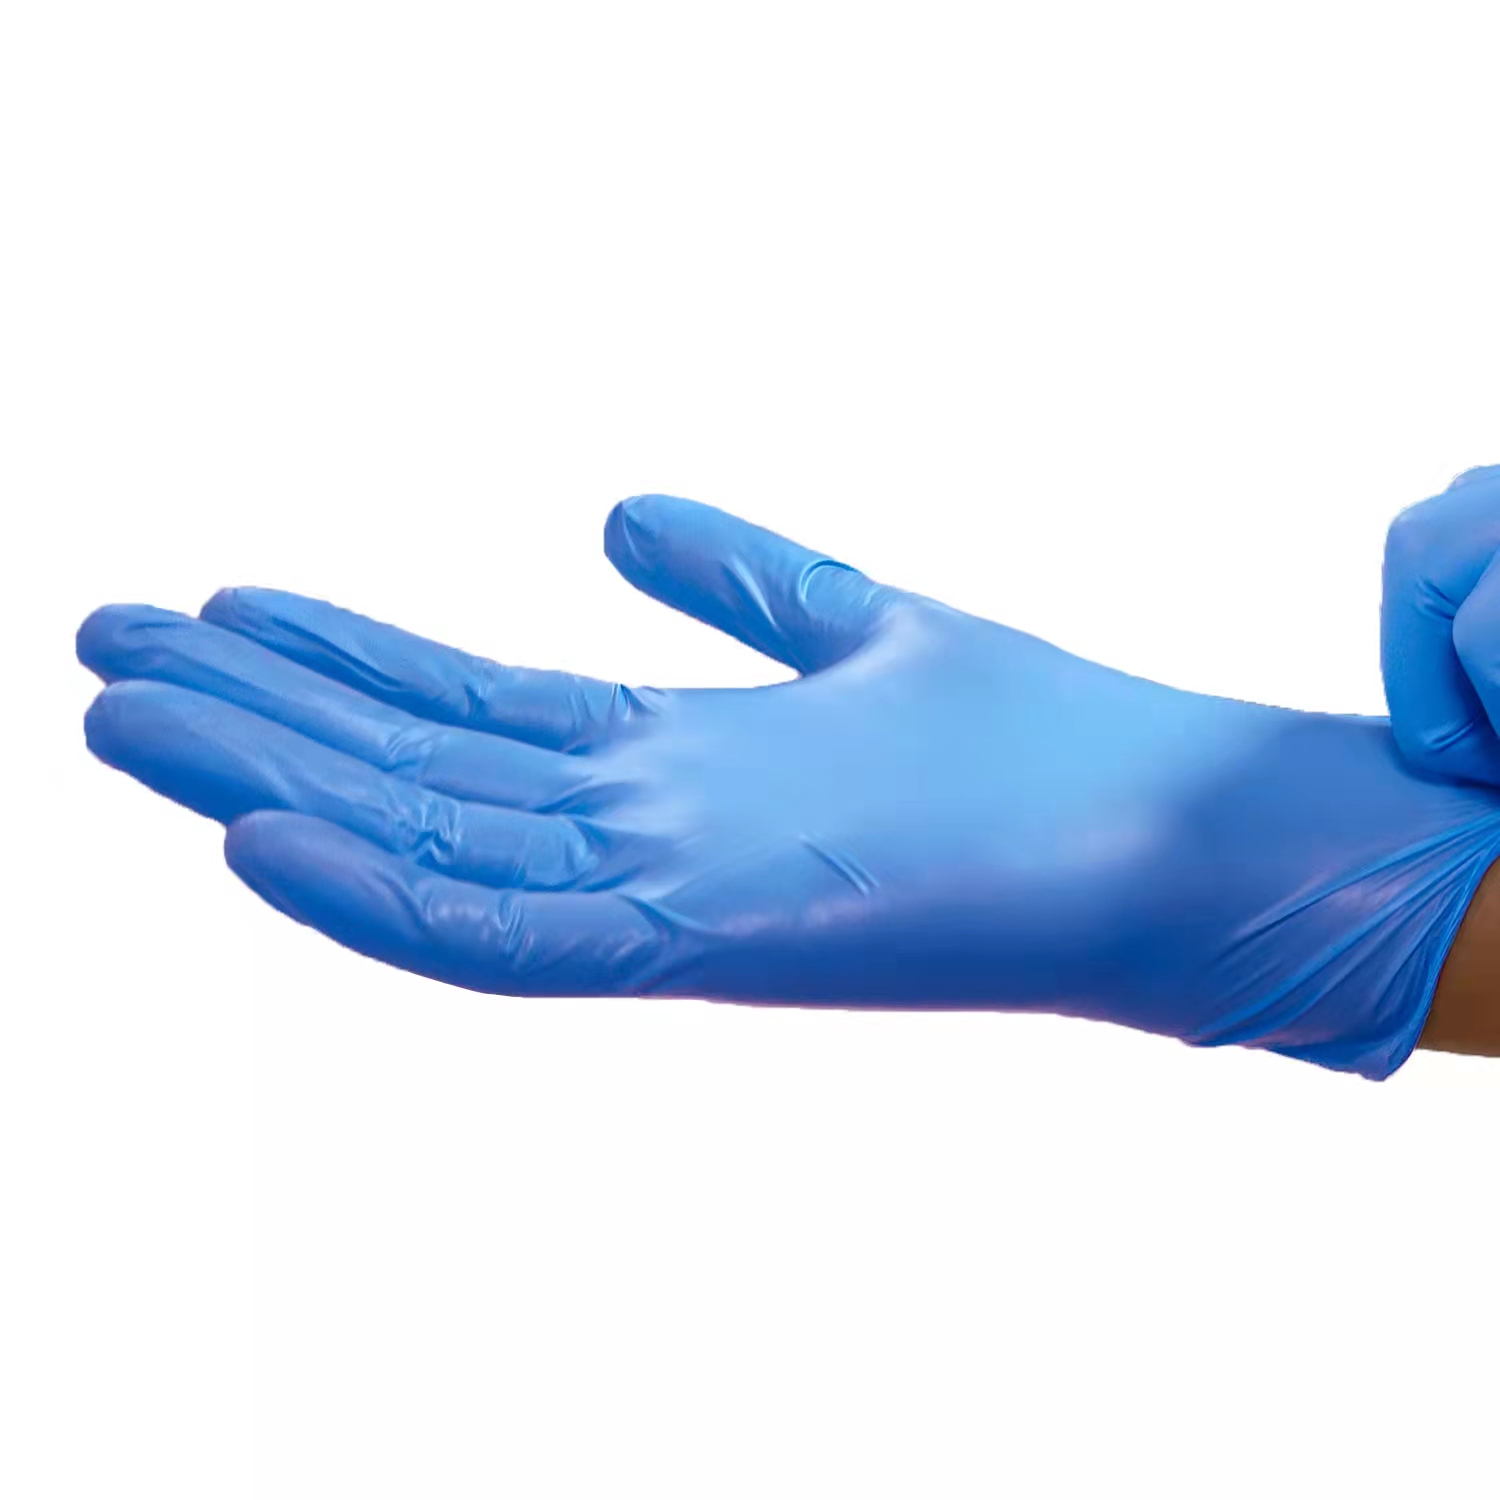 Blue Vinyl Glove 2